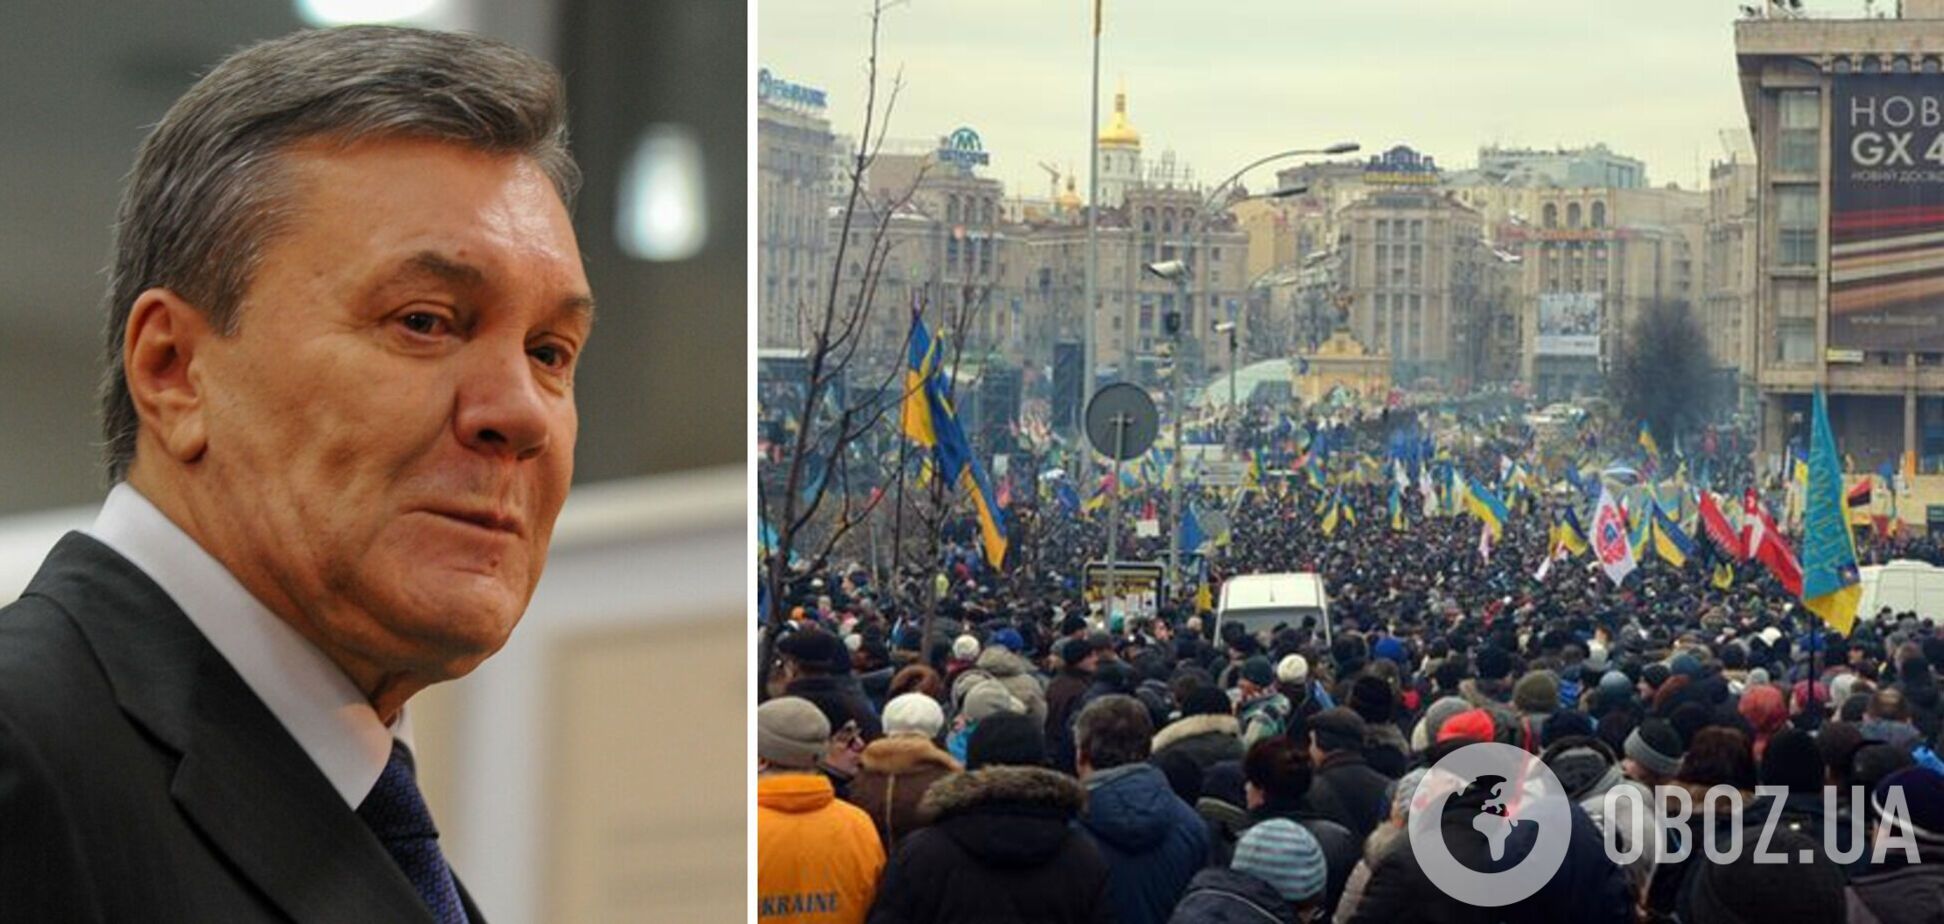 Янукович у постановковій статті звинуватив Майдан-2014 у війні в Україні та розповів про 'особисту драму'